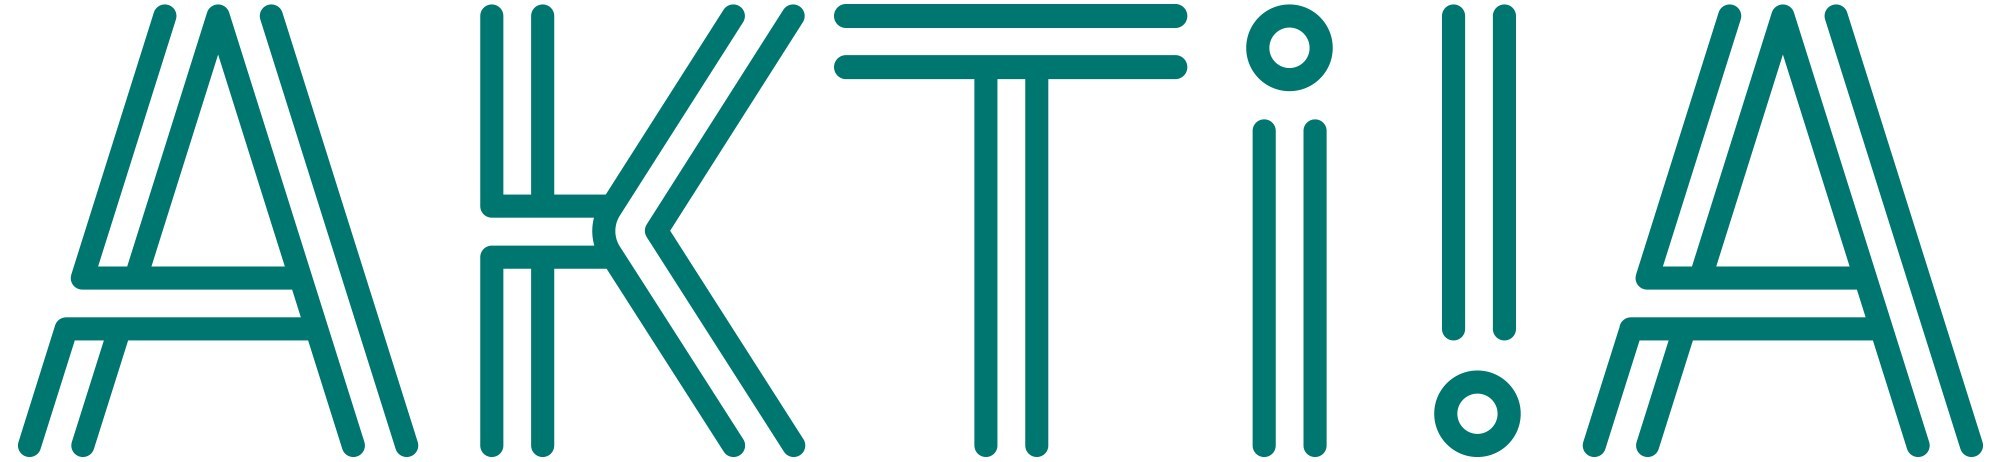 Aktiia Logo